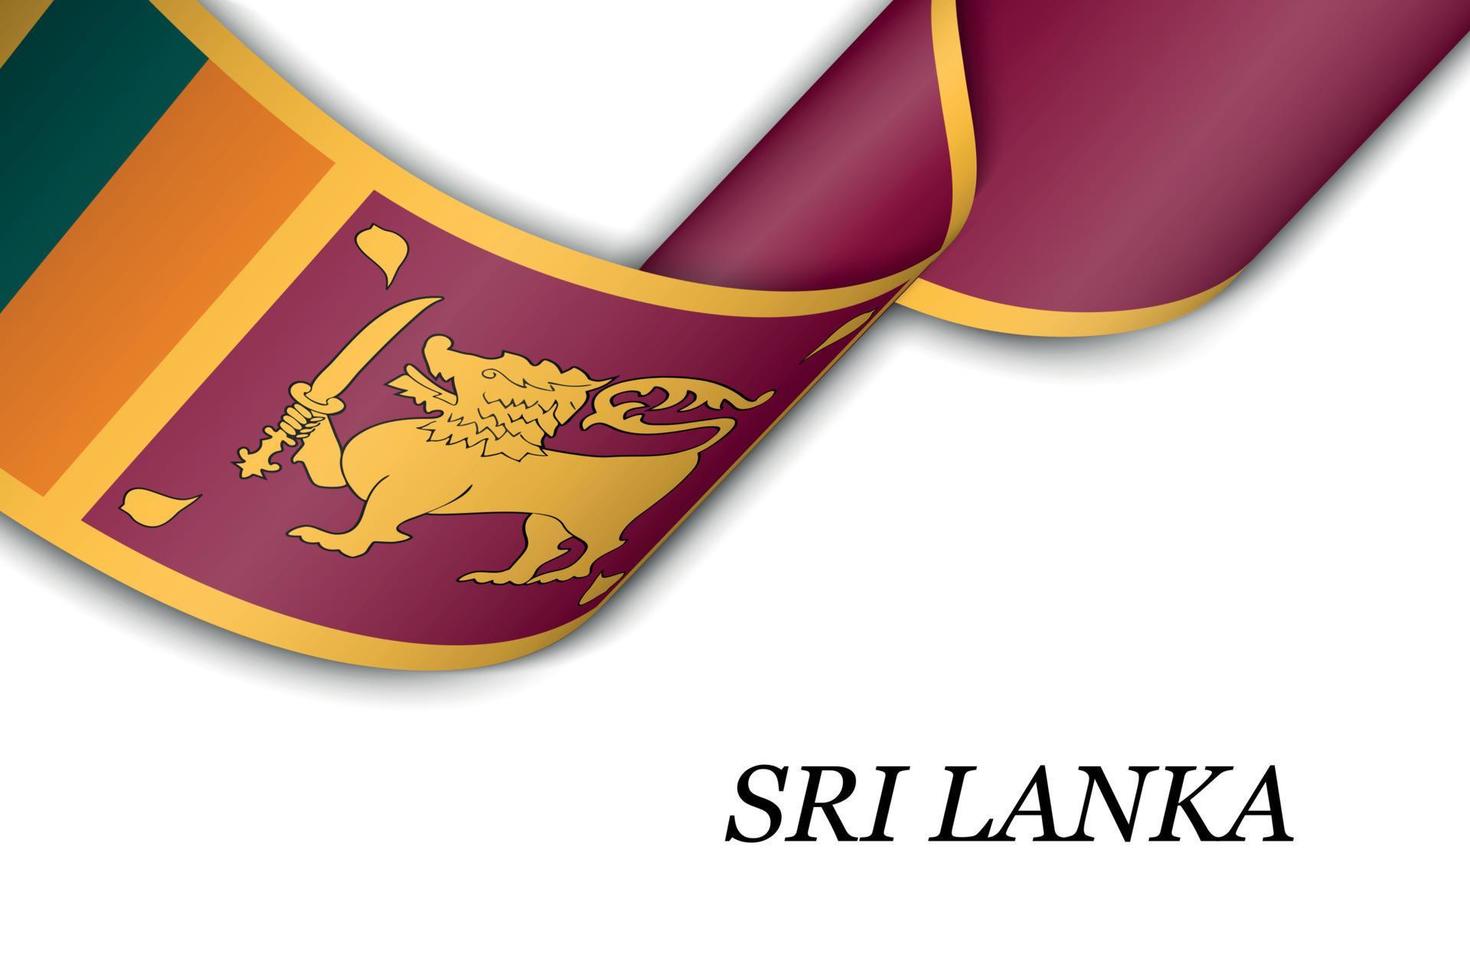 schwenkendes band oder banner mit flagge von sri lanka vektor